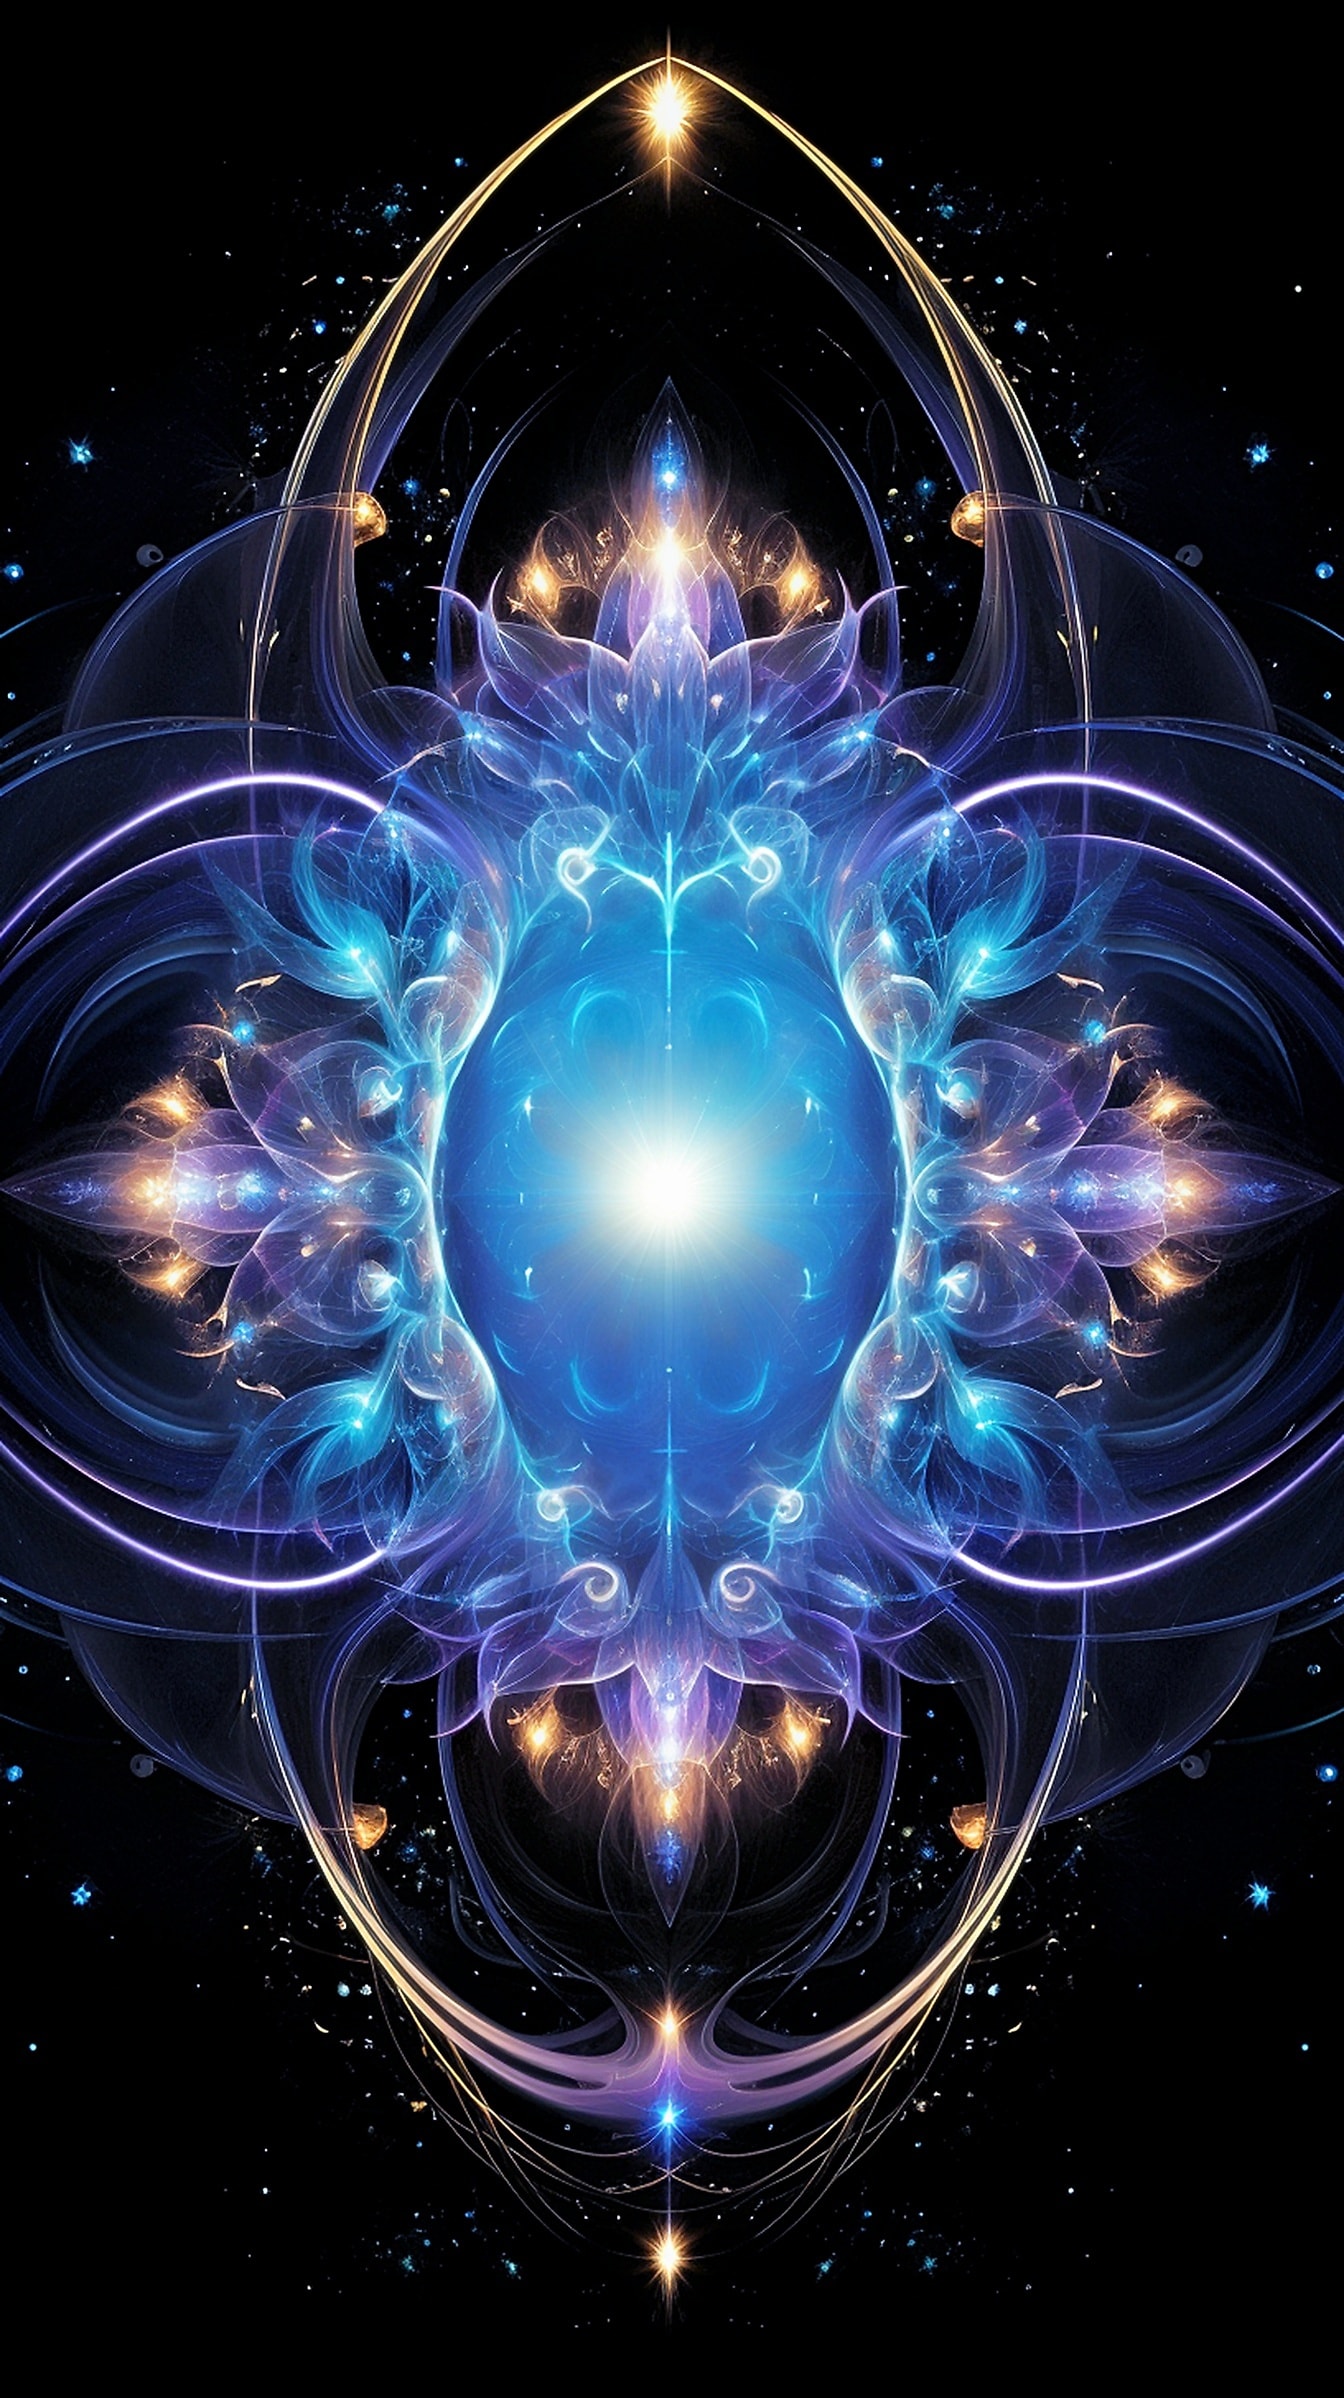 Diseño fractal de fantasía con un centro redondo que ilustra la simetría artística